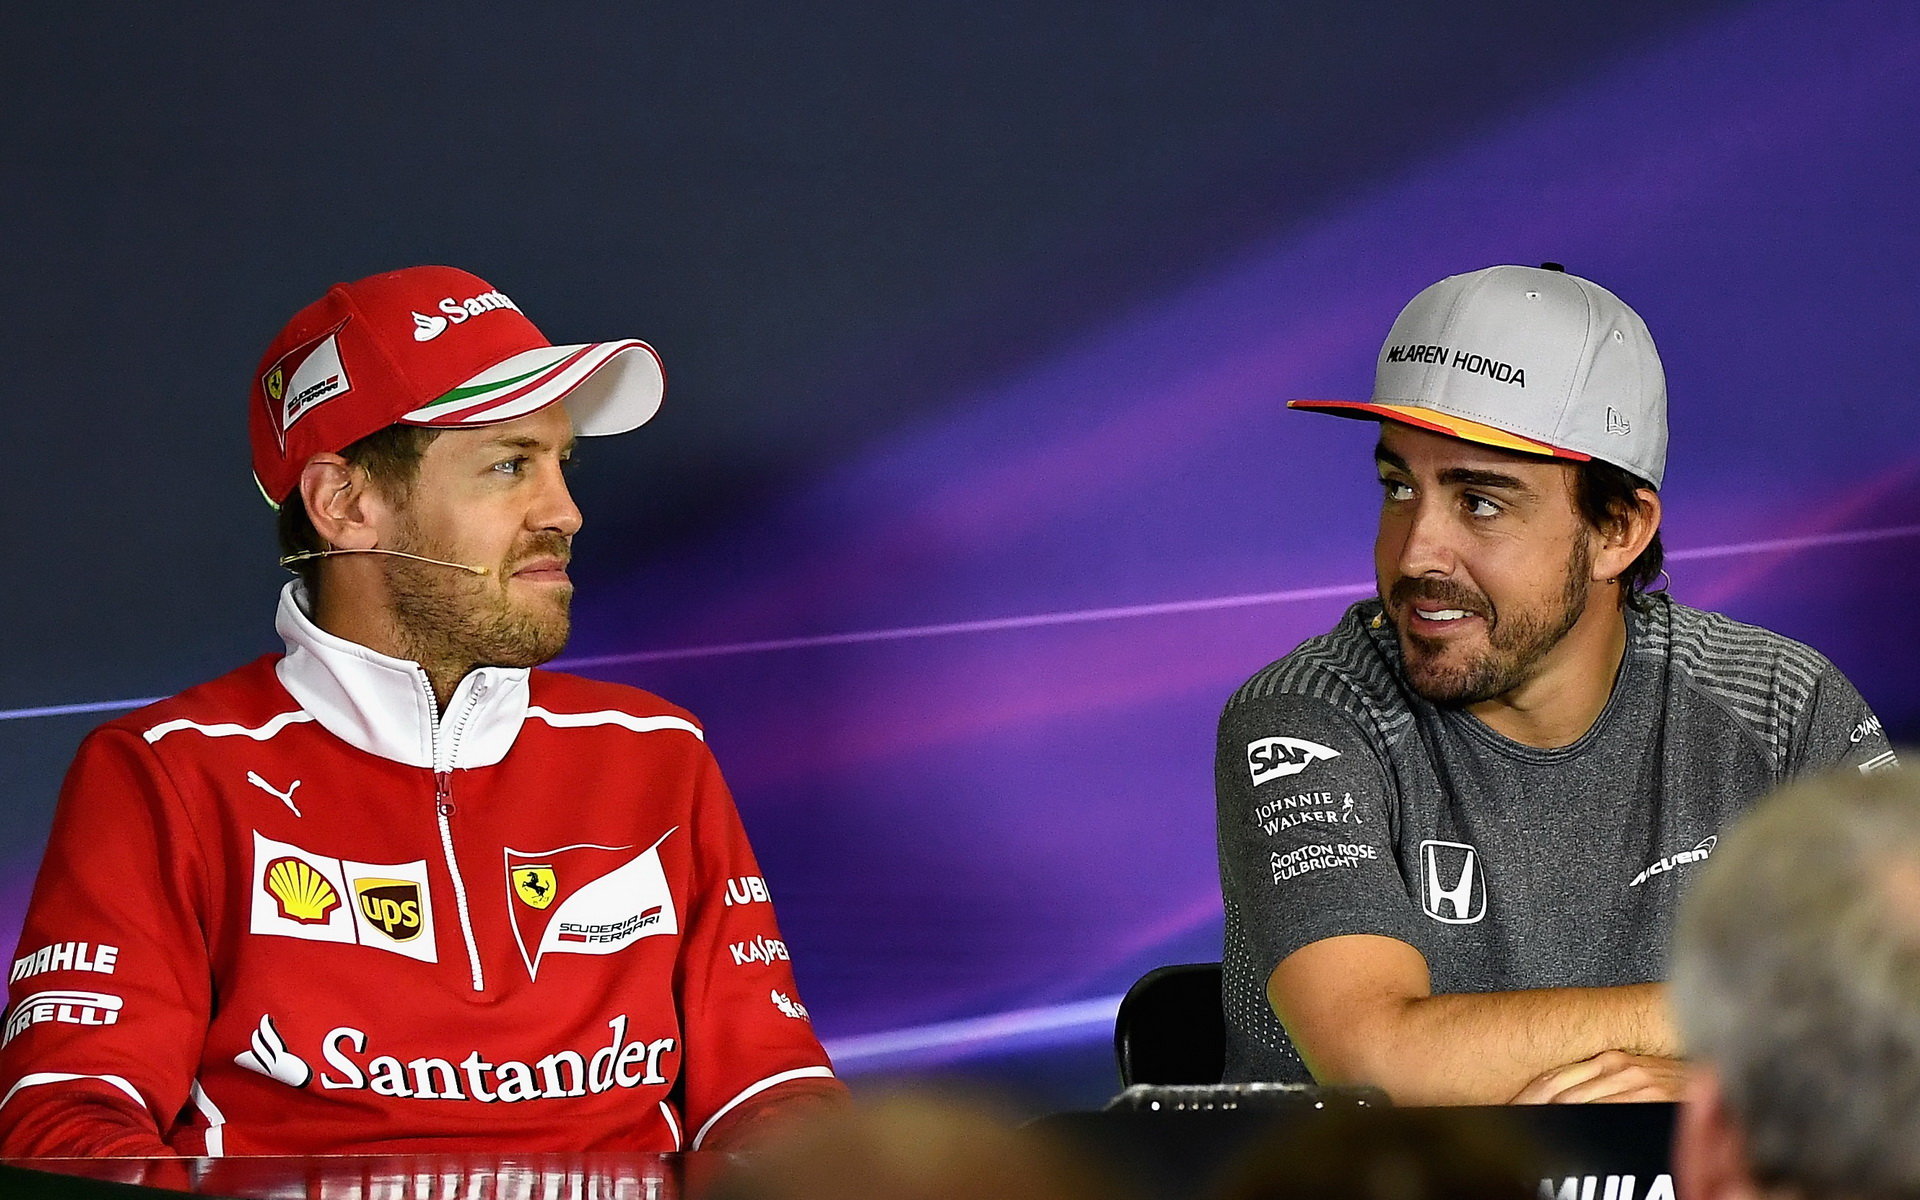 Alonso neodolal a vrátíl se, potká totéž i Vettela?